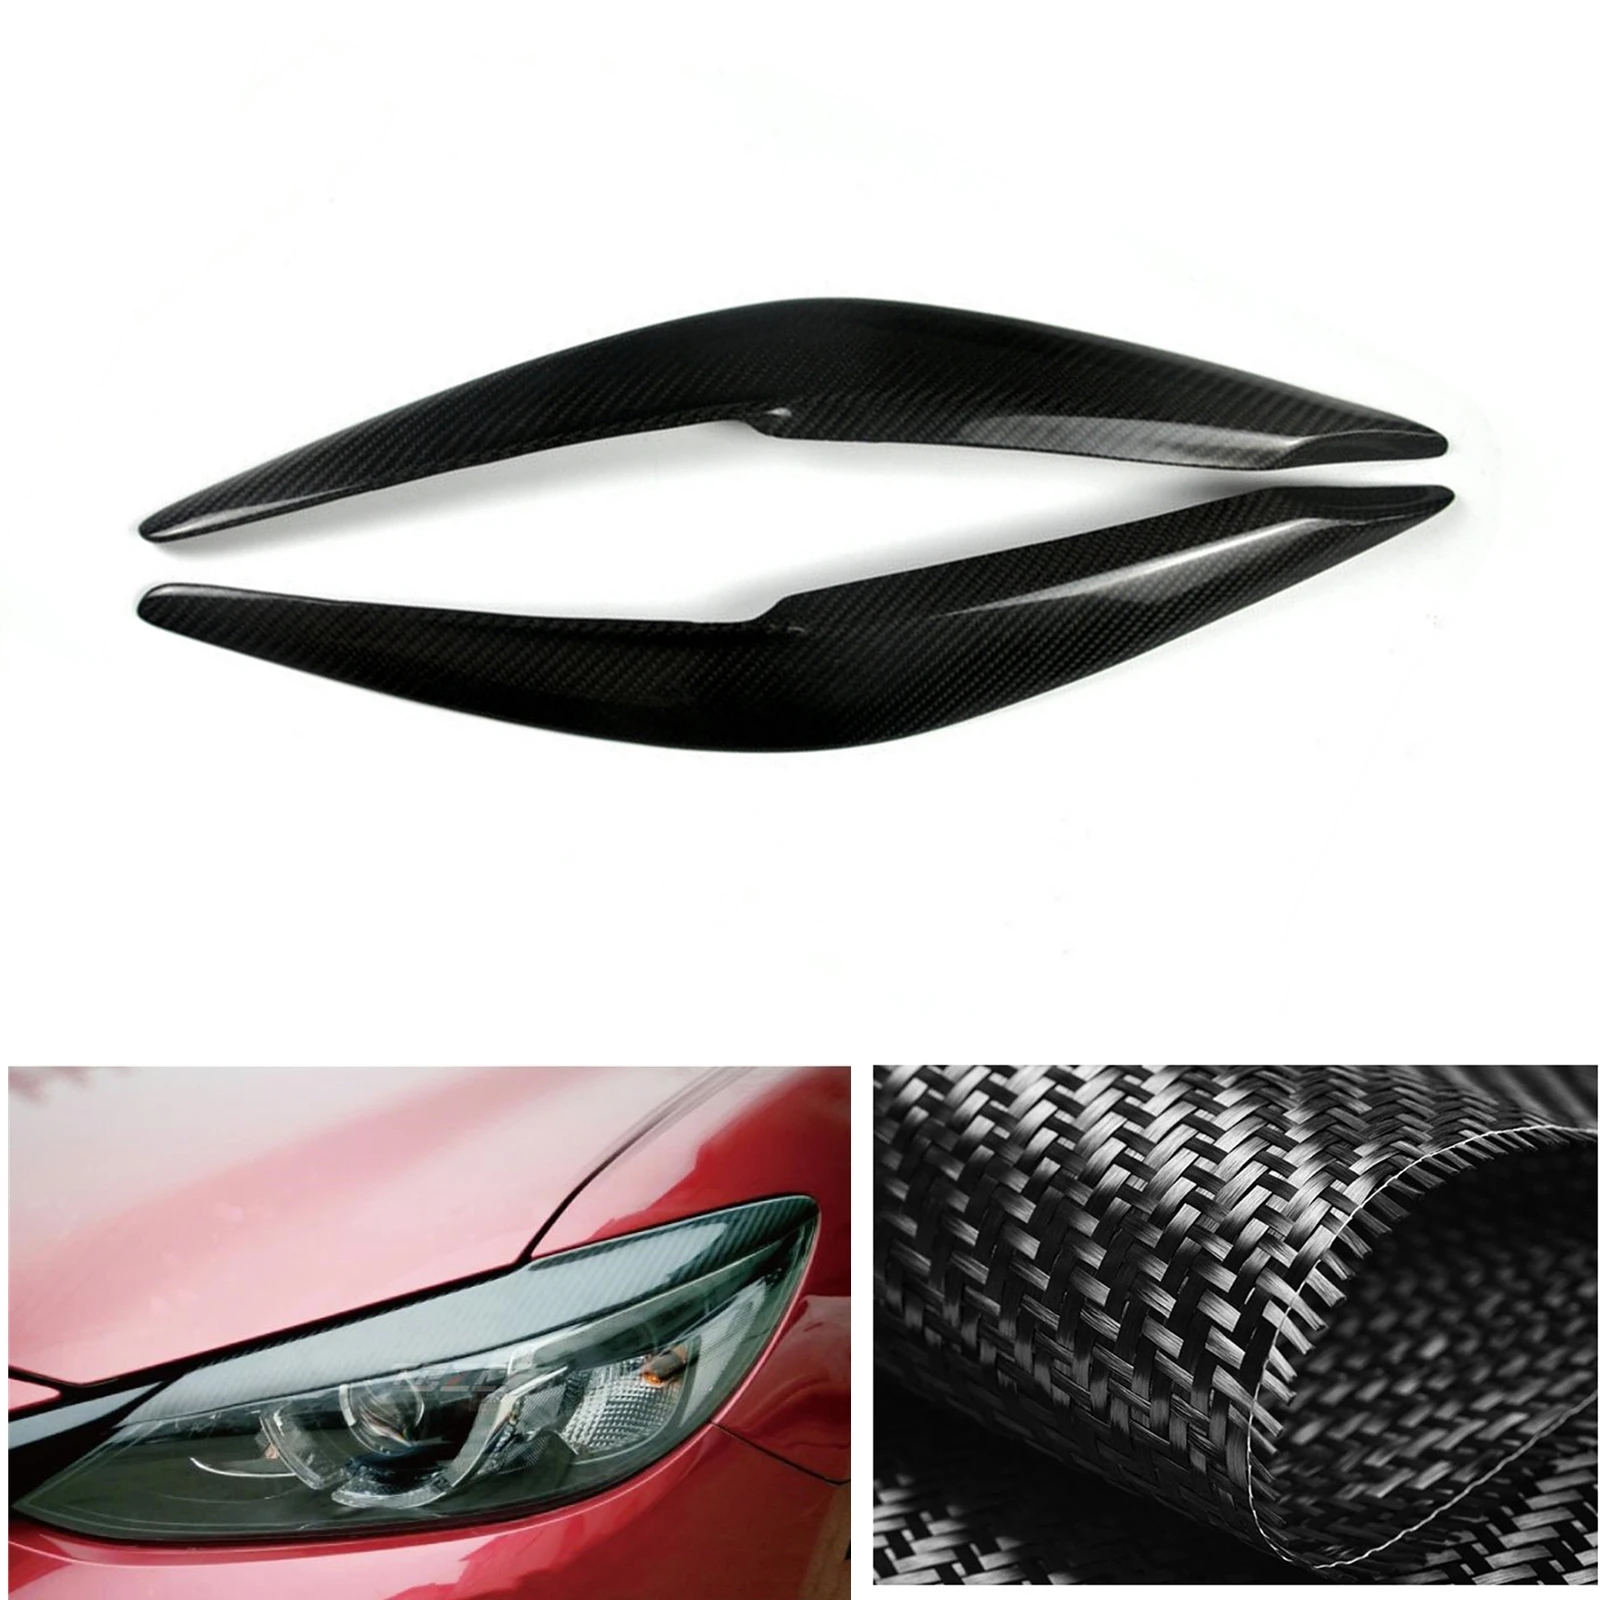 

Налобный фонарь, налобный фонарь для Mazda 6 Atenza 2017-2018, настоящие Углеродные волокна, передняя фара, фотолампа, крышка брови, отделка, наклейка